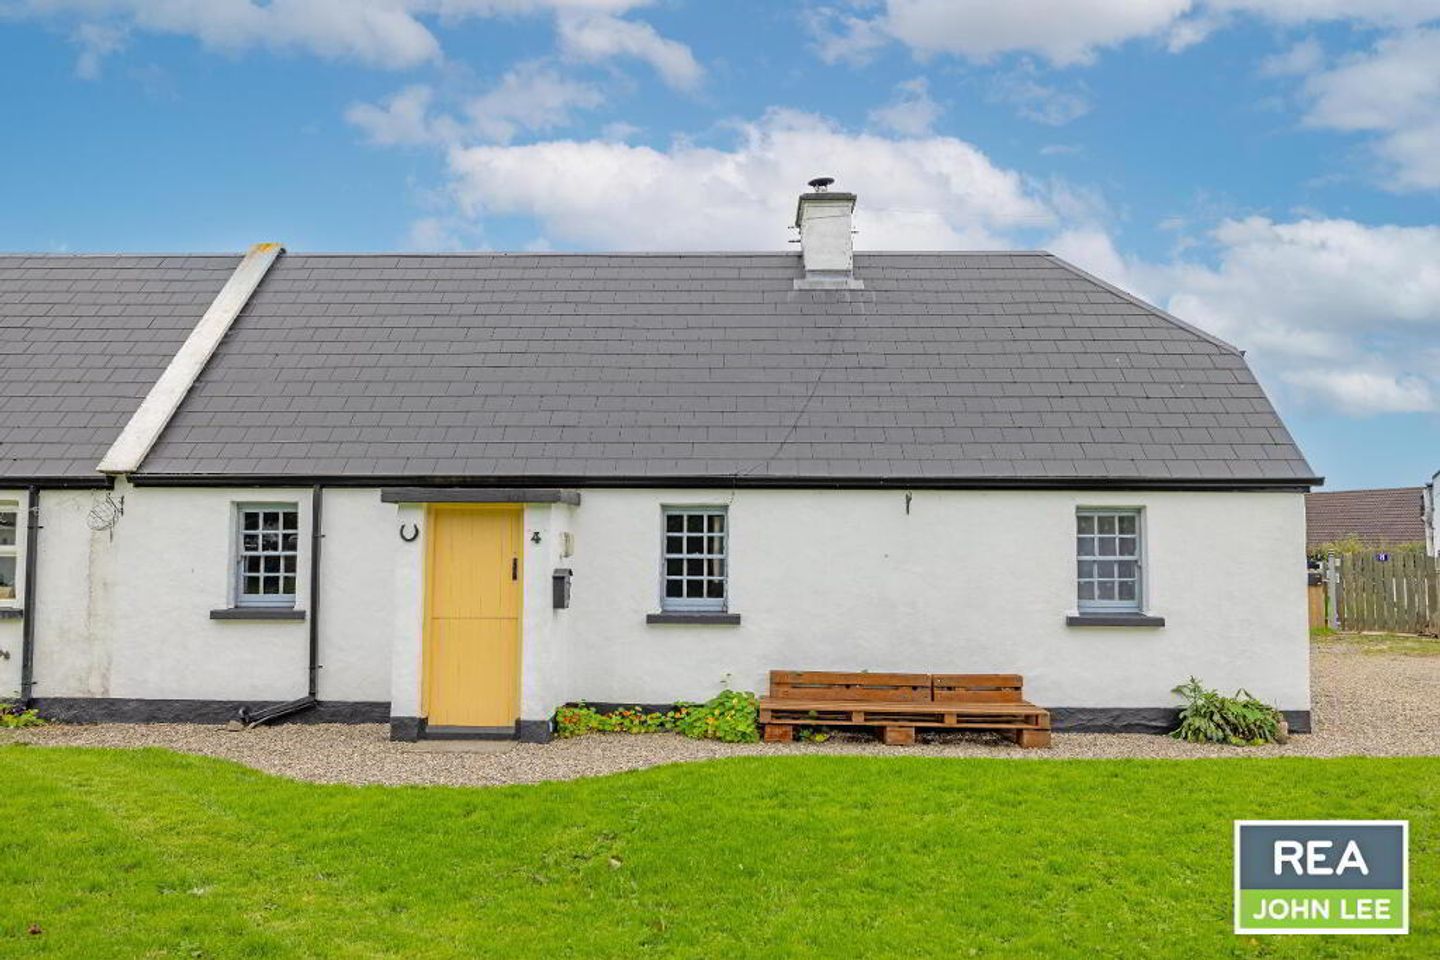 4 The Cottages, Murroe, Co. Limerick, V94T6V9 is for sale on Daft.ie